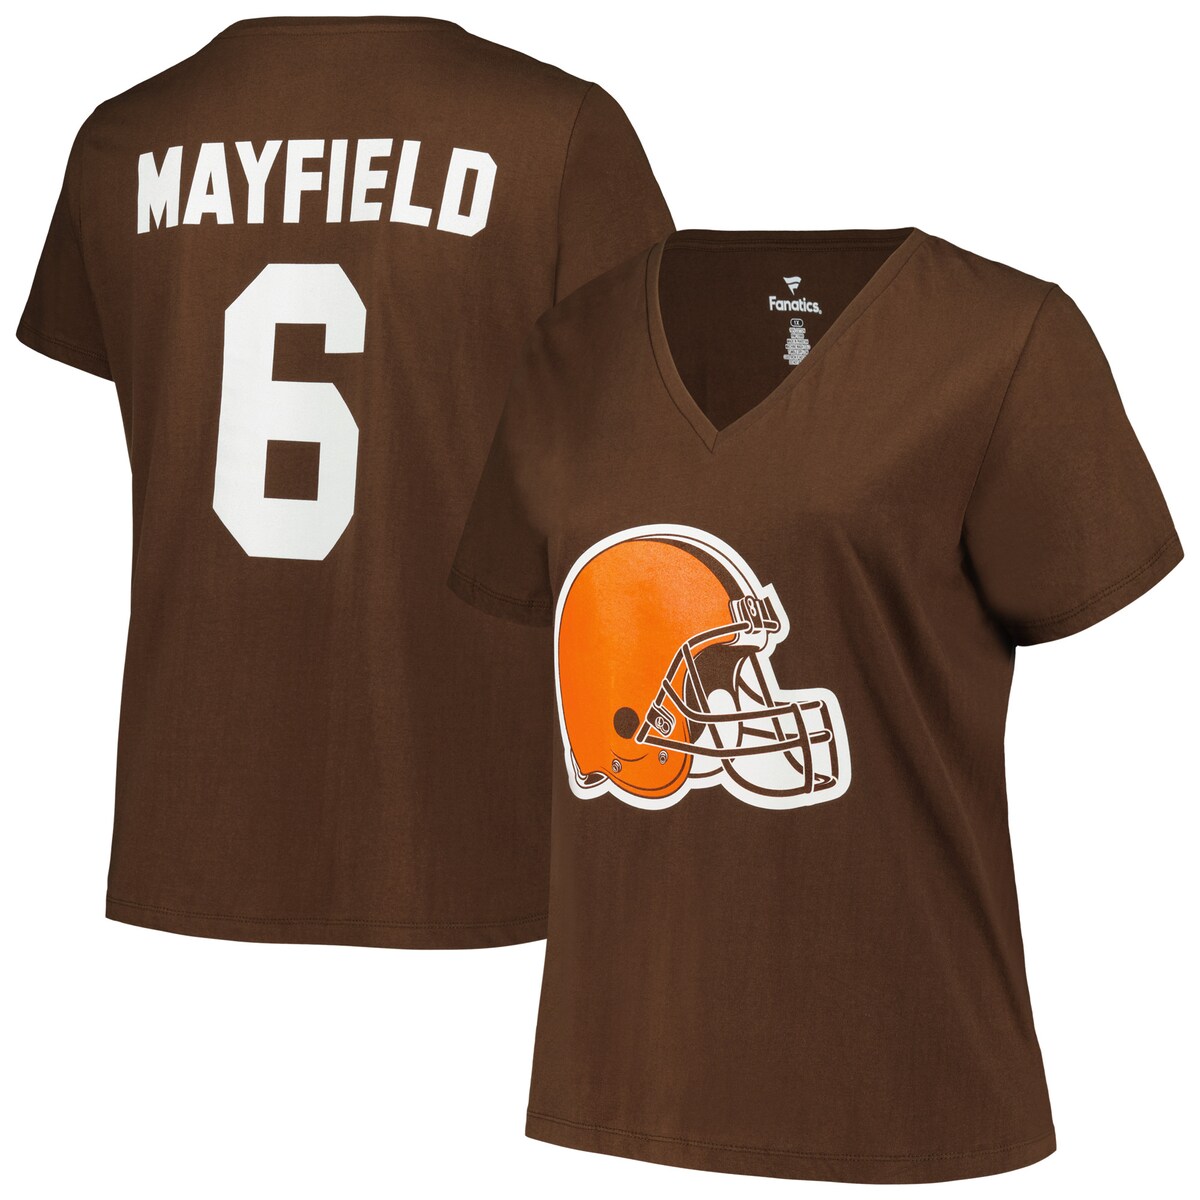 【公式グッズ】NFL ブラウンズ ベイカー・メイフィールド Tシャツ Fanatics（ファナティクス） レディース ブラウン (Women's Plus Size N&N SST - EXPIRED)